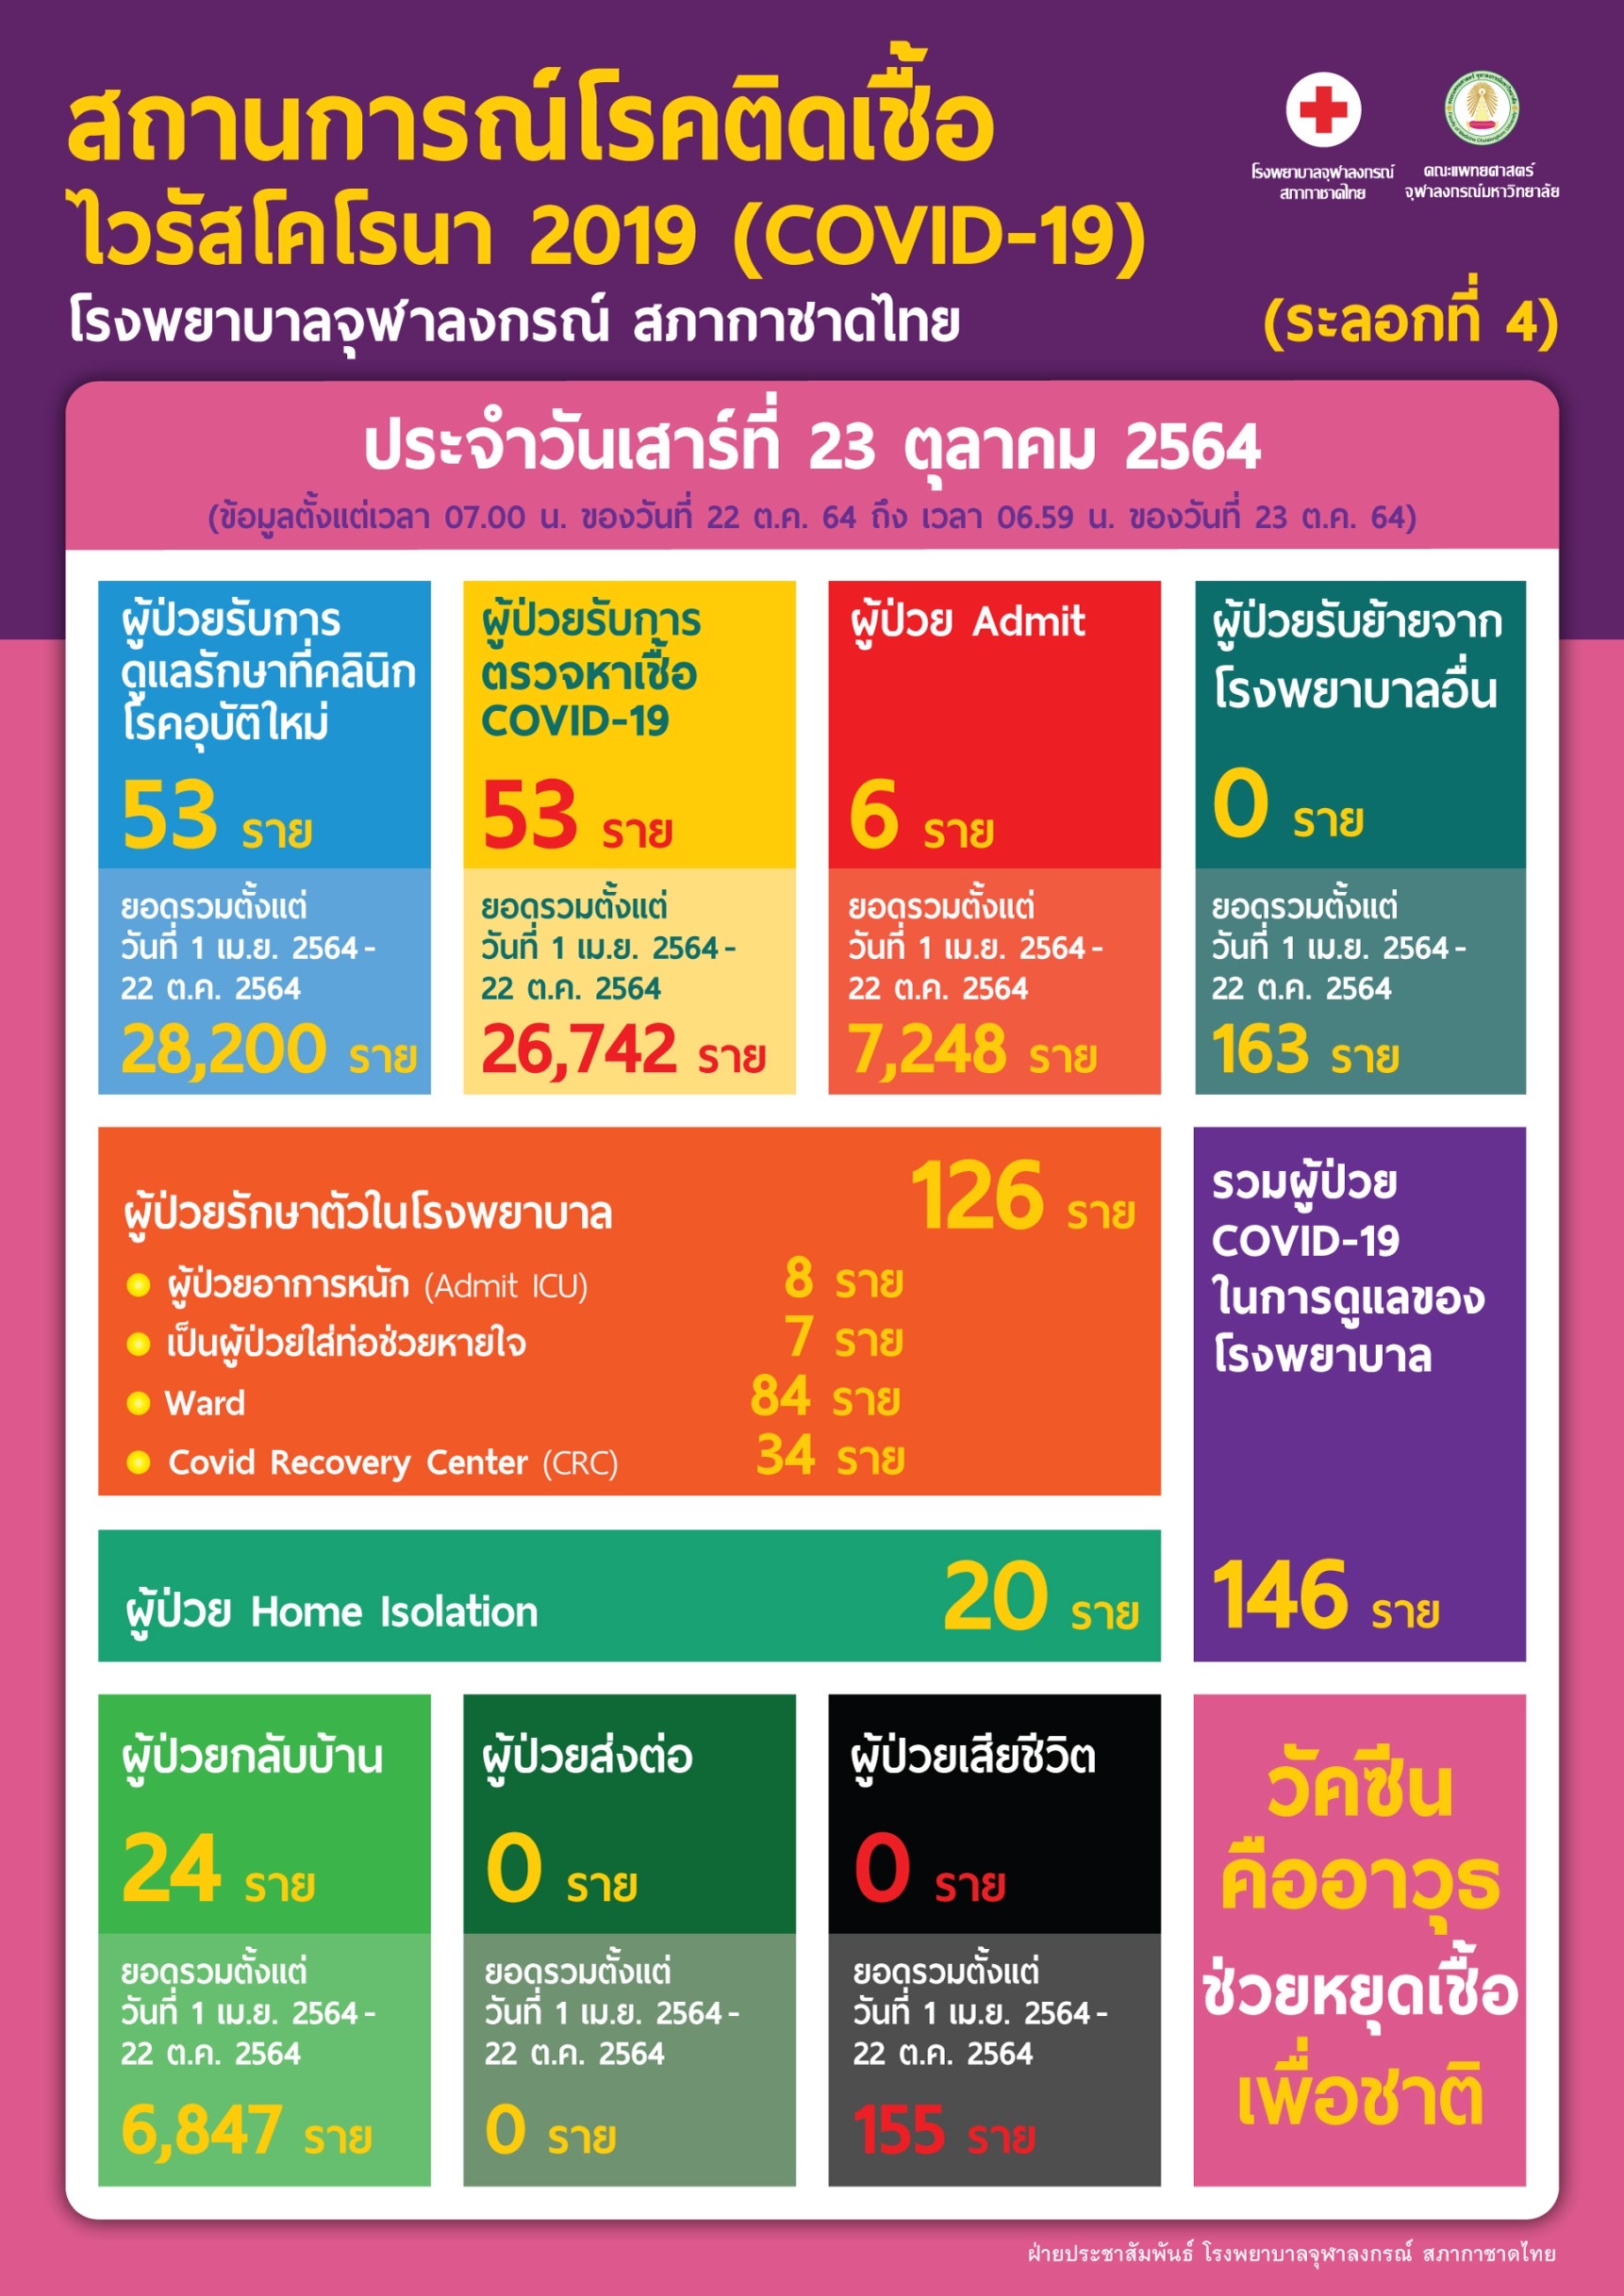 สถานการณ์โรคติดเชื้อไวรัสโคโรนา 2019 (COVID-19) (ระลอกที่ 4) โรงพยาบาลจุฬาลงกรณ์ สภากาชาดไทย ประจำวันเสาร์ที่ 23 ตุลาคม 2564